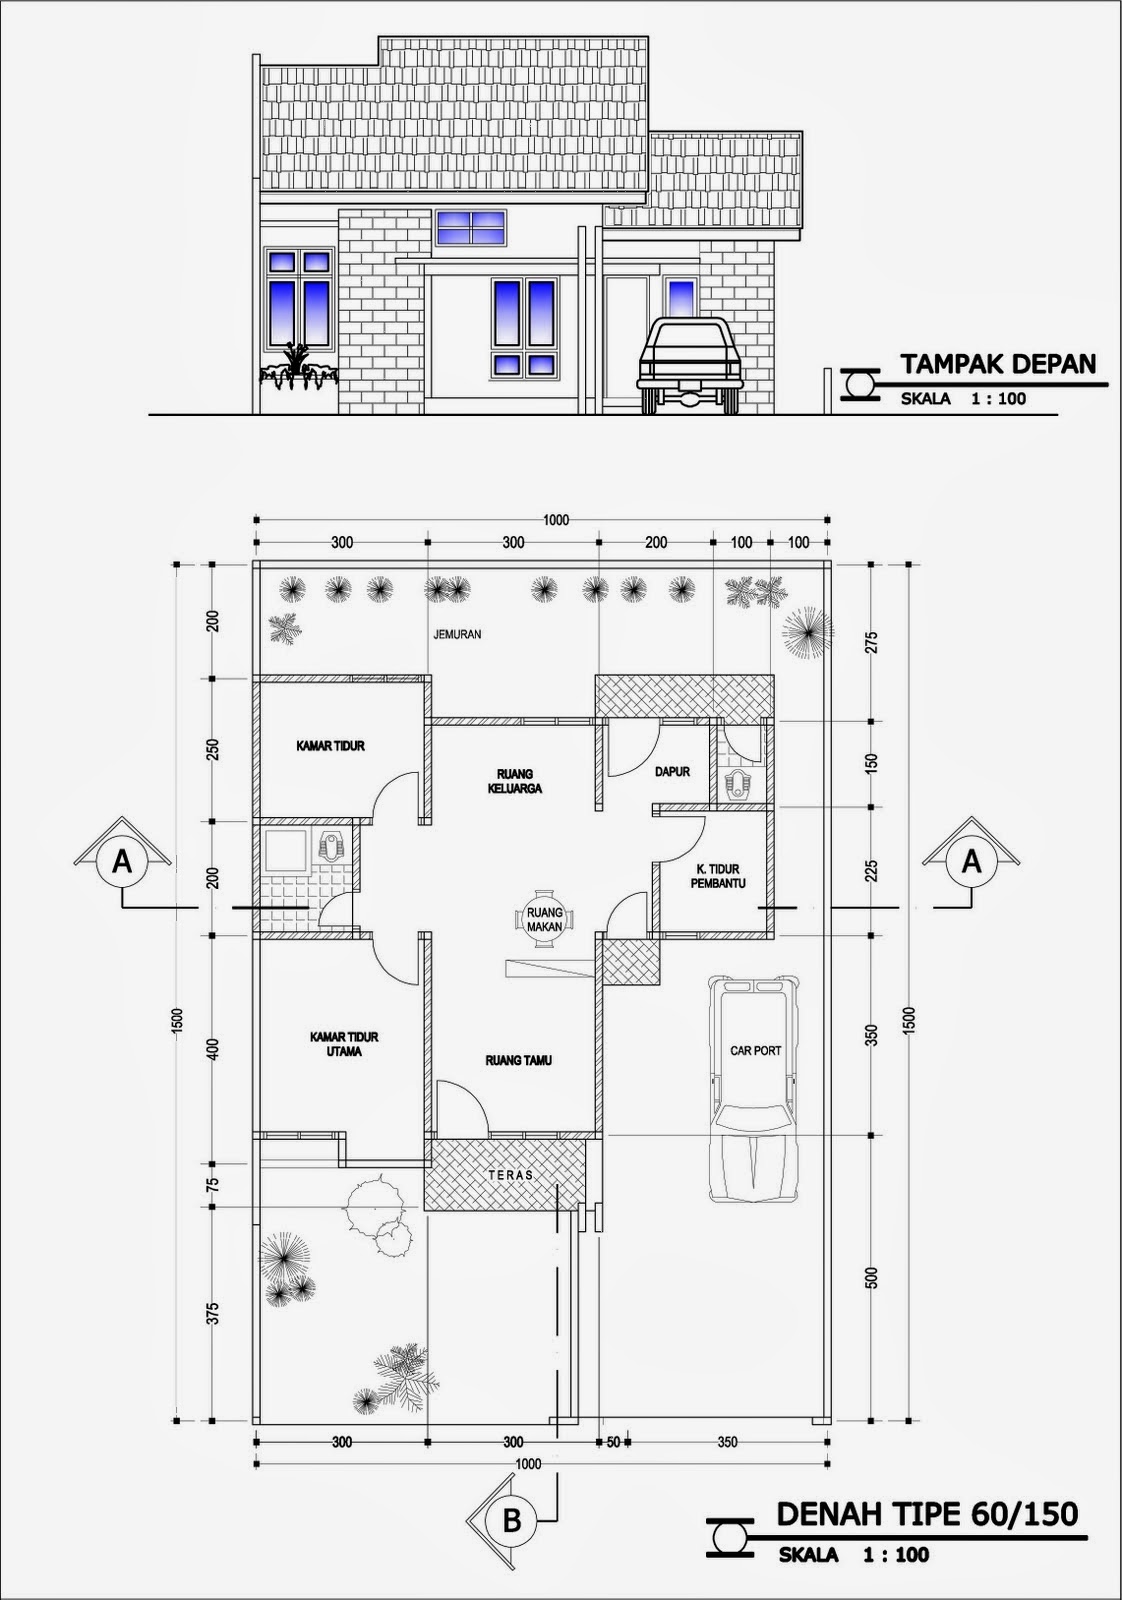 Contoh Gambar Denah Rumah Minimalis Terbaru | Info Tercepatku